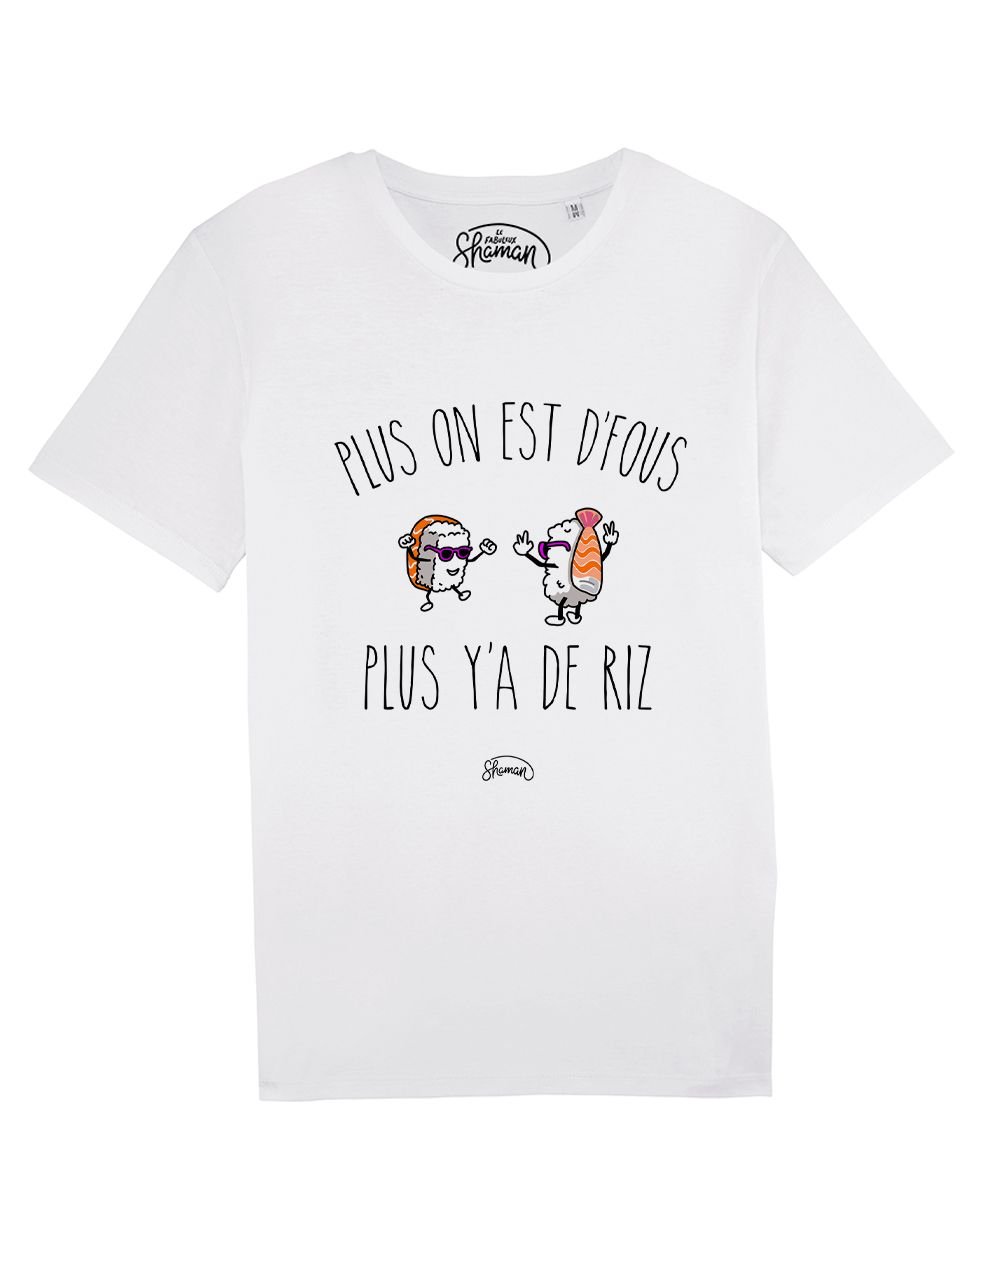 Tee-shirt "Plus on est de fous"